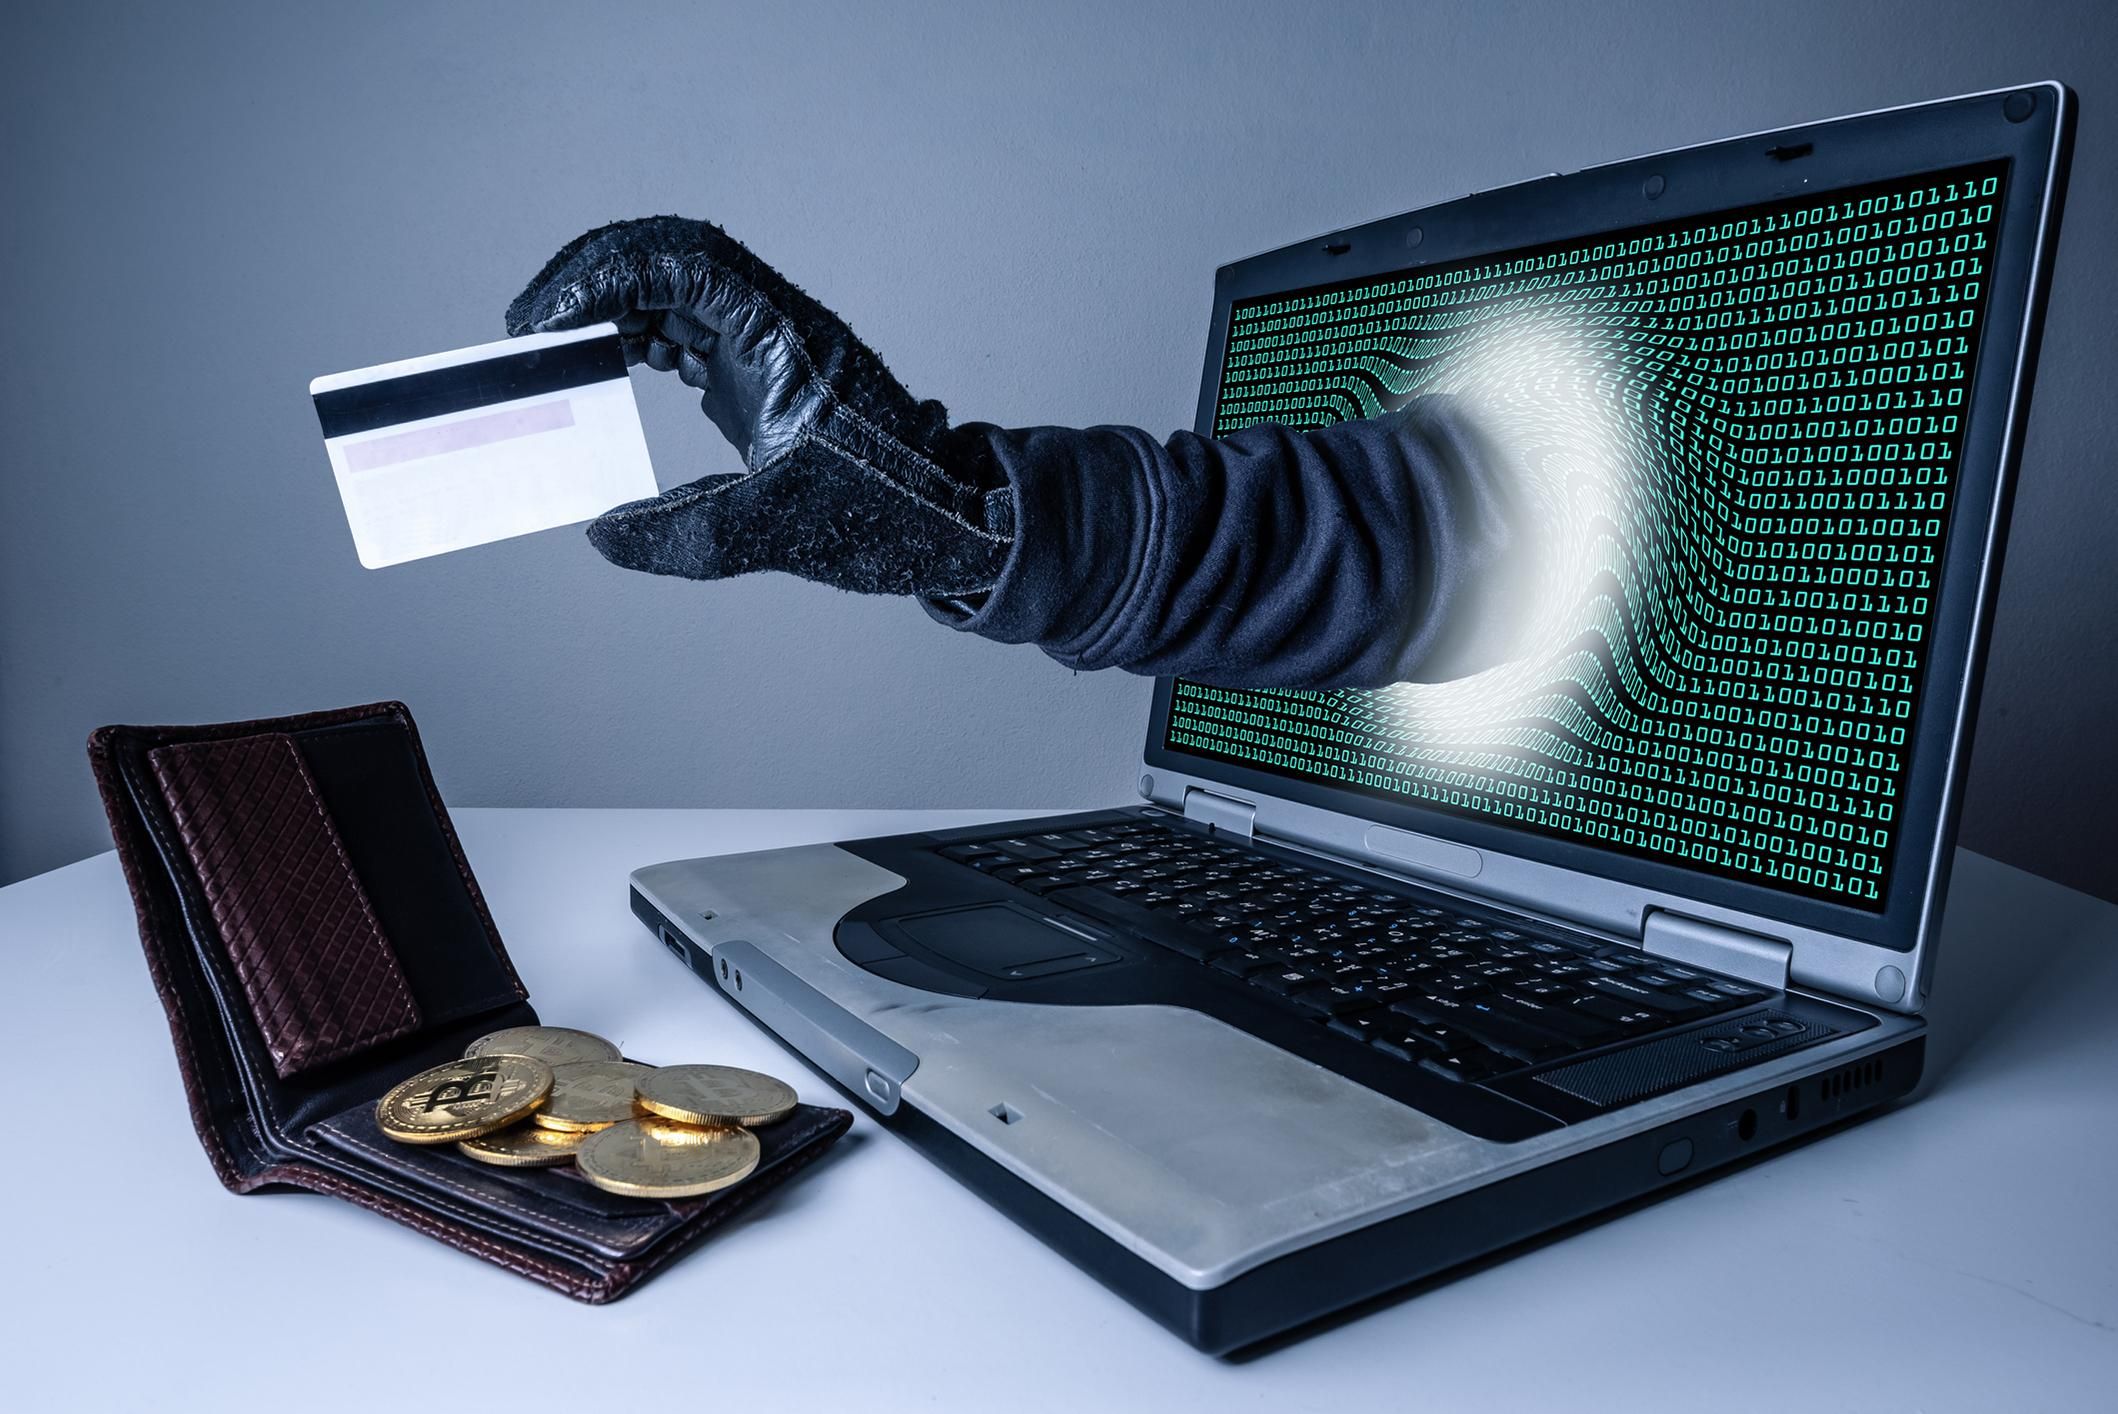 Обманули людей на миллионы гривен: киберполиция разоблачила сеть мошенников